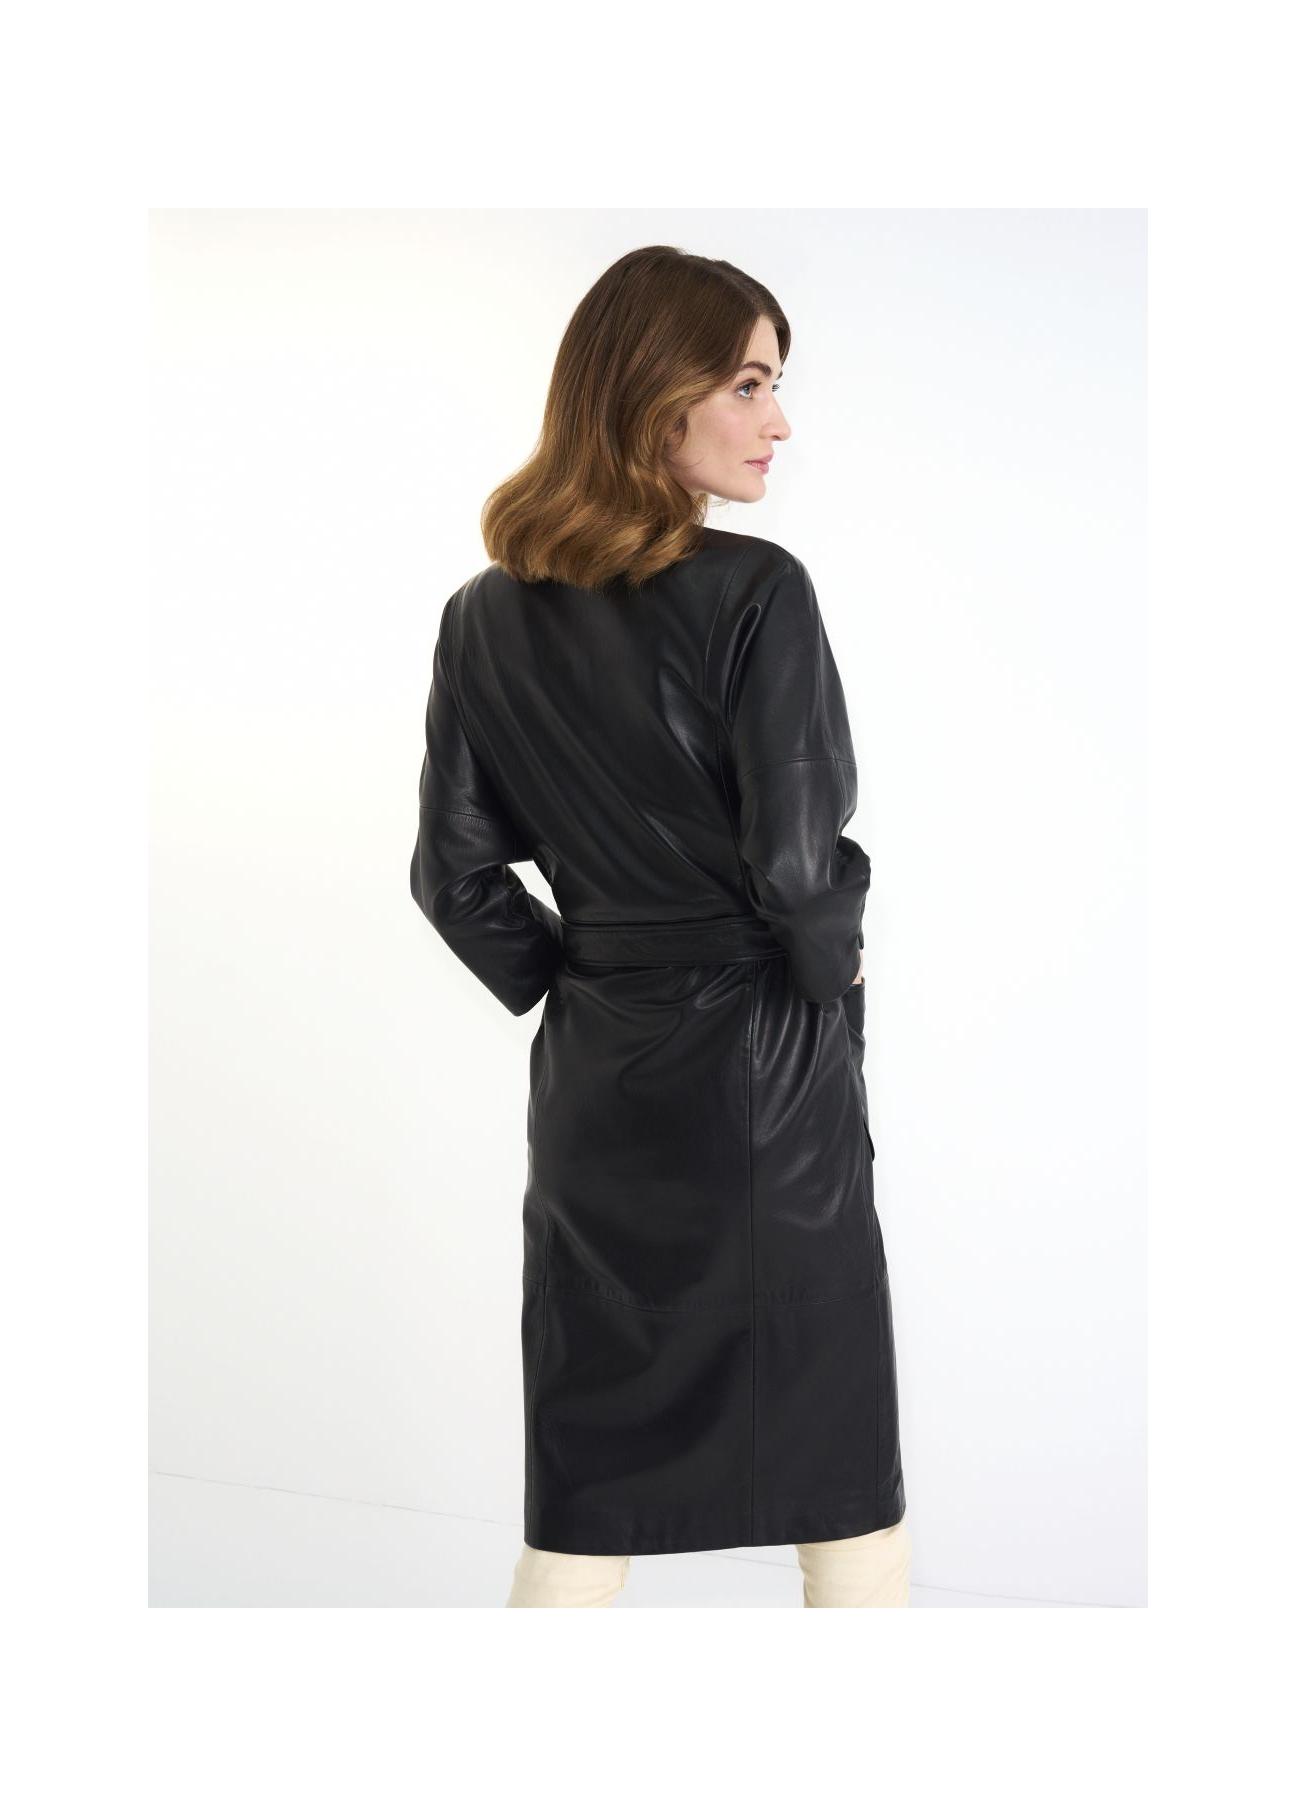 Czarny skórzany płaszcz damski z paskiem KURDS-0358-5411(Z23)